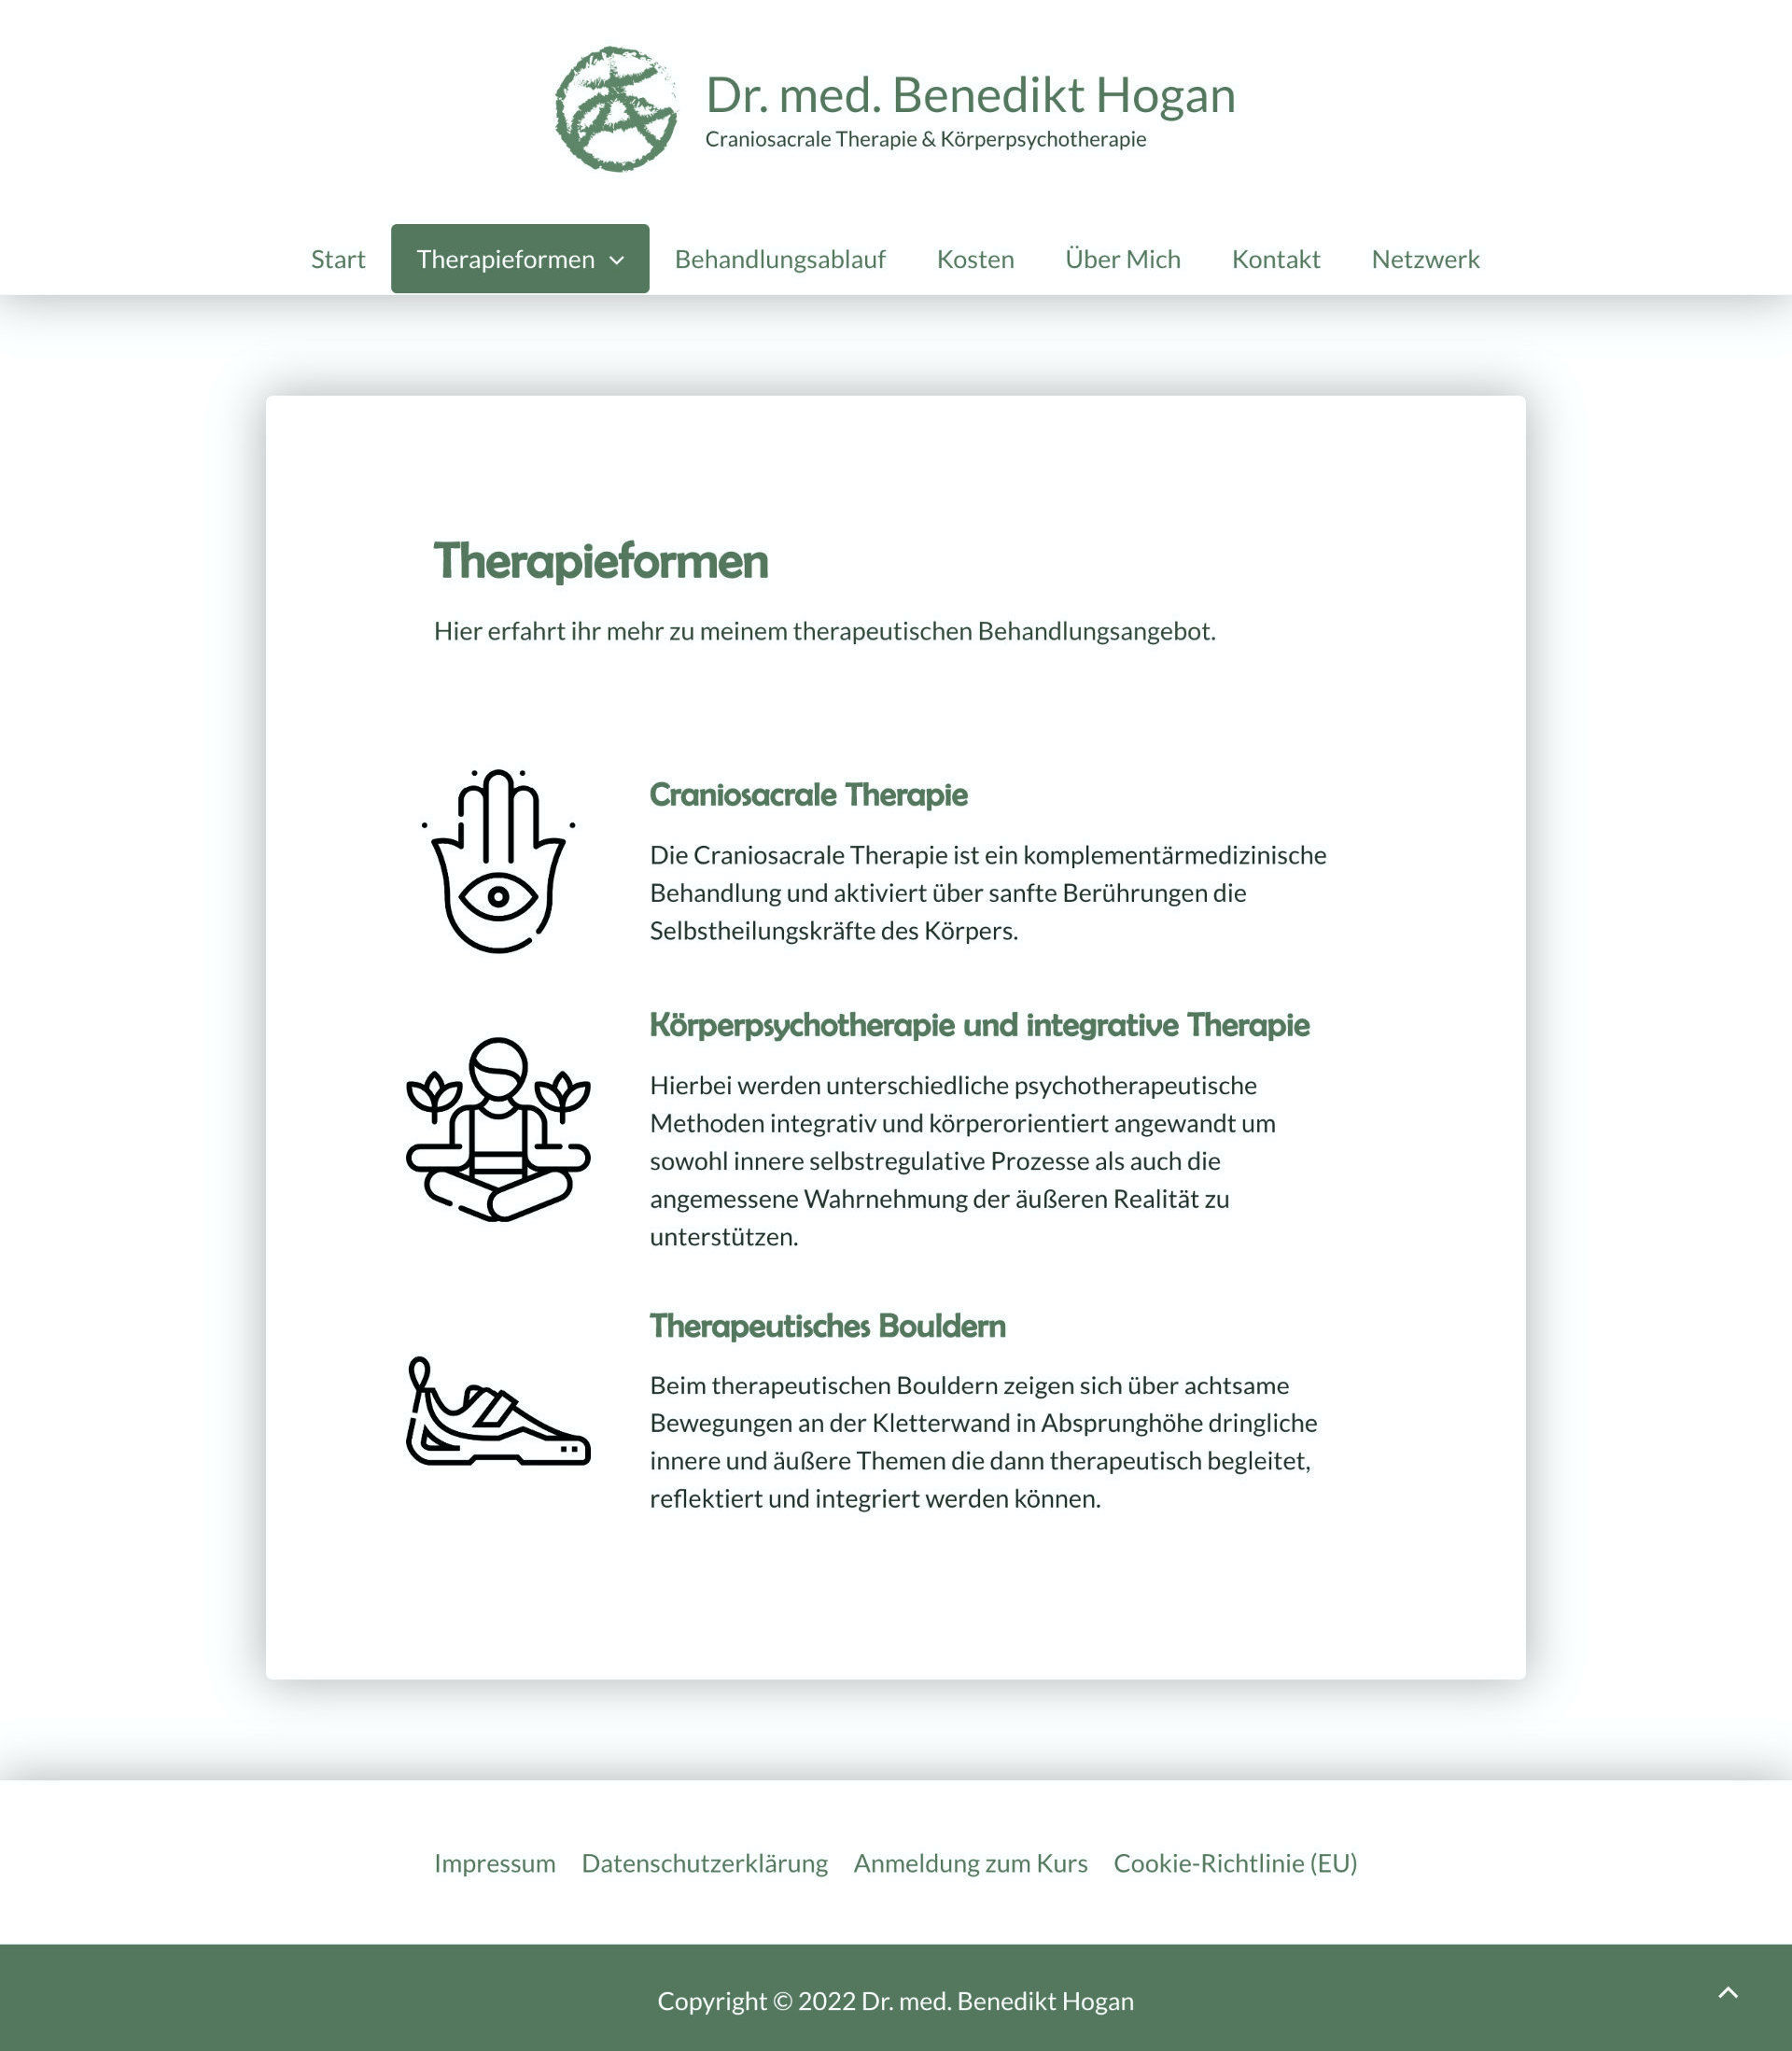 Scrrenshot der Seite "Therapie-Formen. Mit drei Grapiken links und rechts daneben die Titel und Beschriebungstexte.